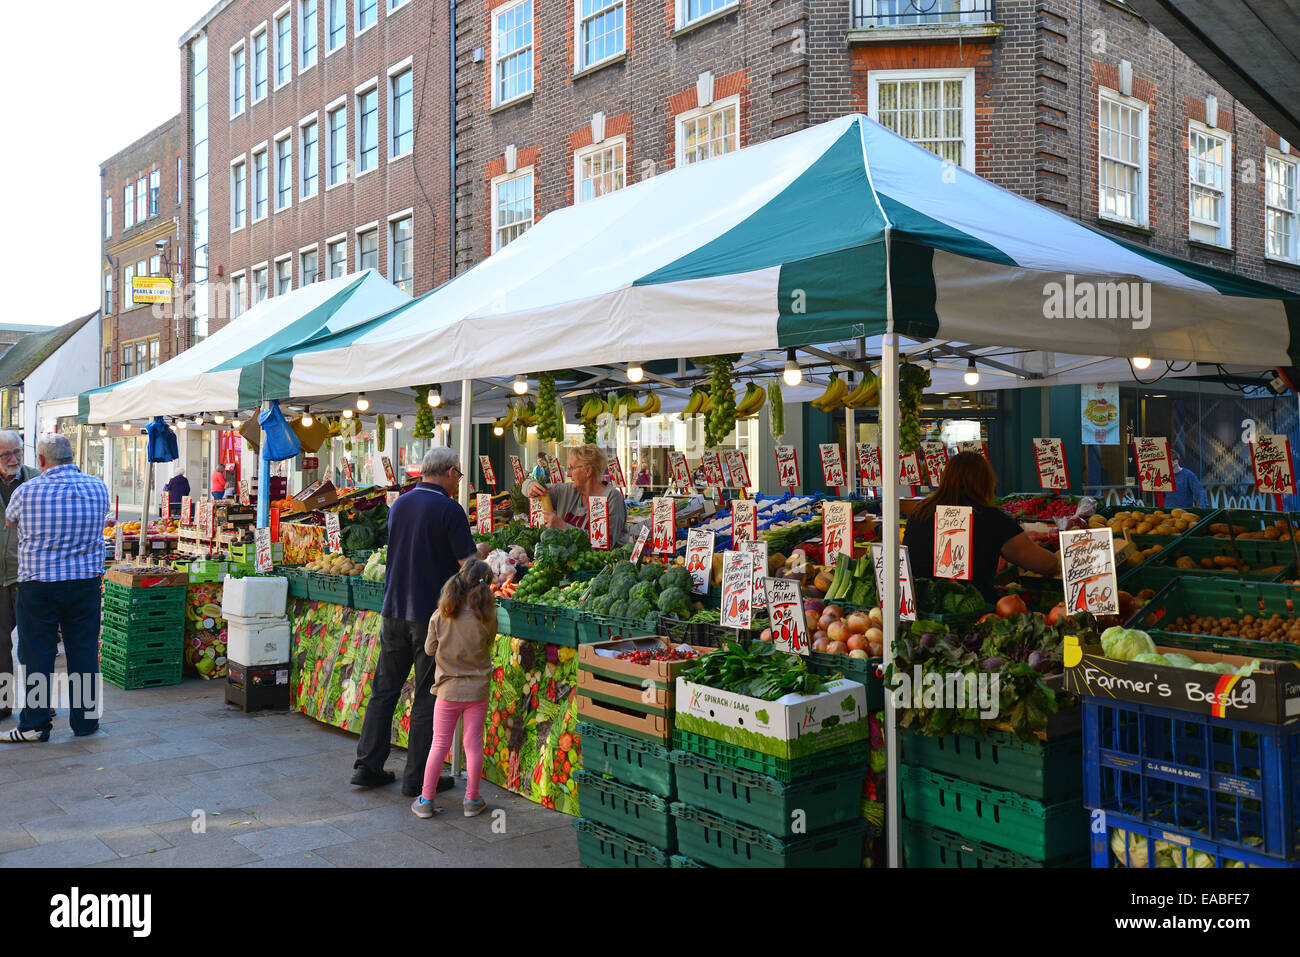 Bauern-Markt Obst und Gemüse stand, The Parade, High Street, Watford, Hertfordshire, England, Vereinigtes Königreich Stockfoto